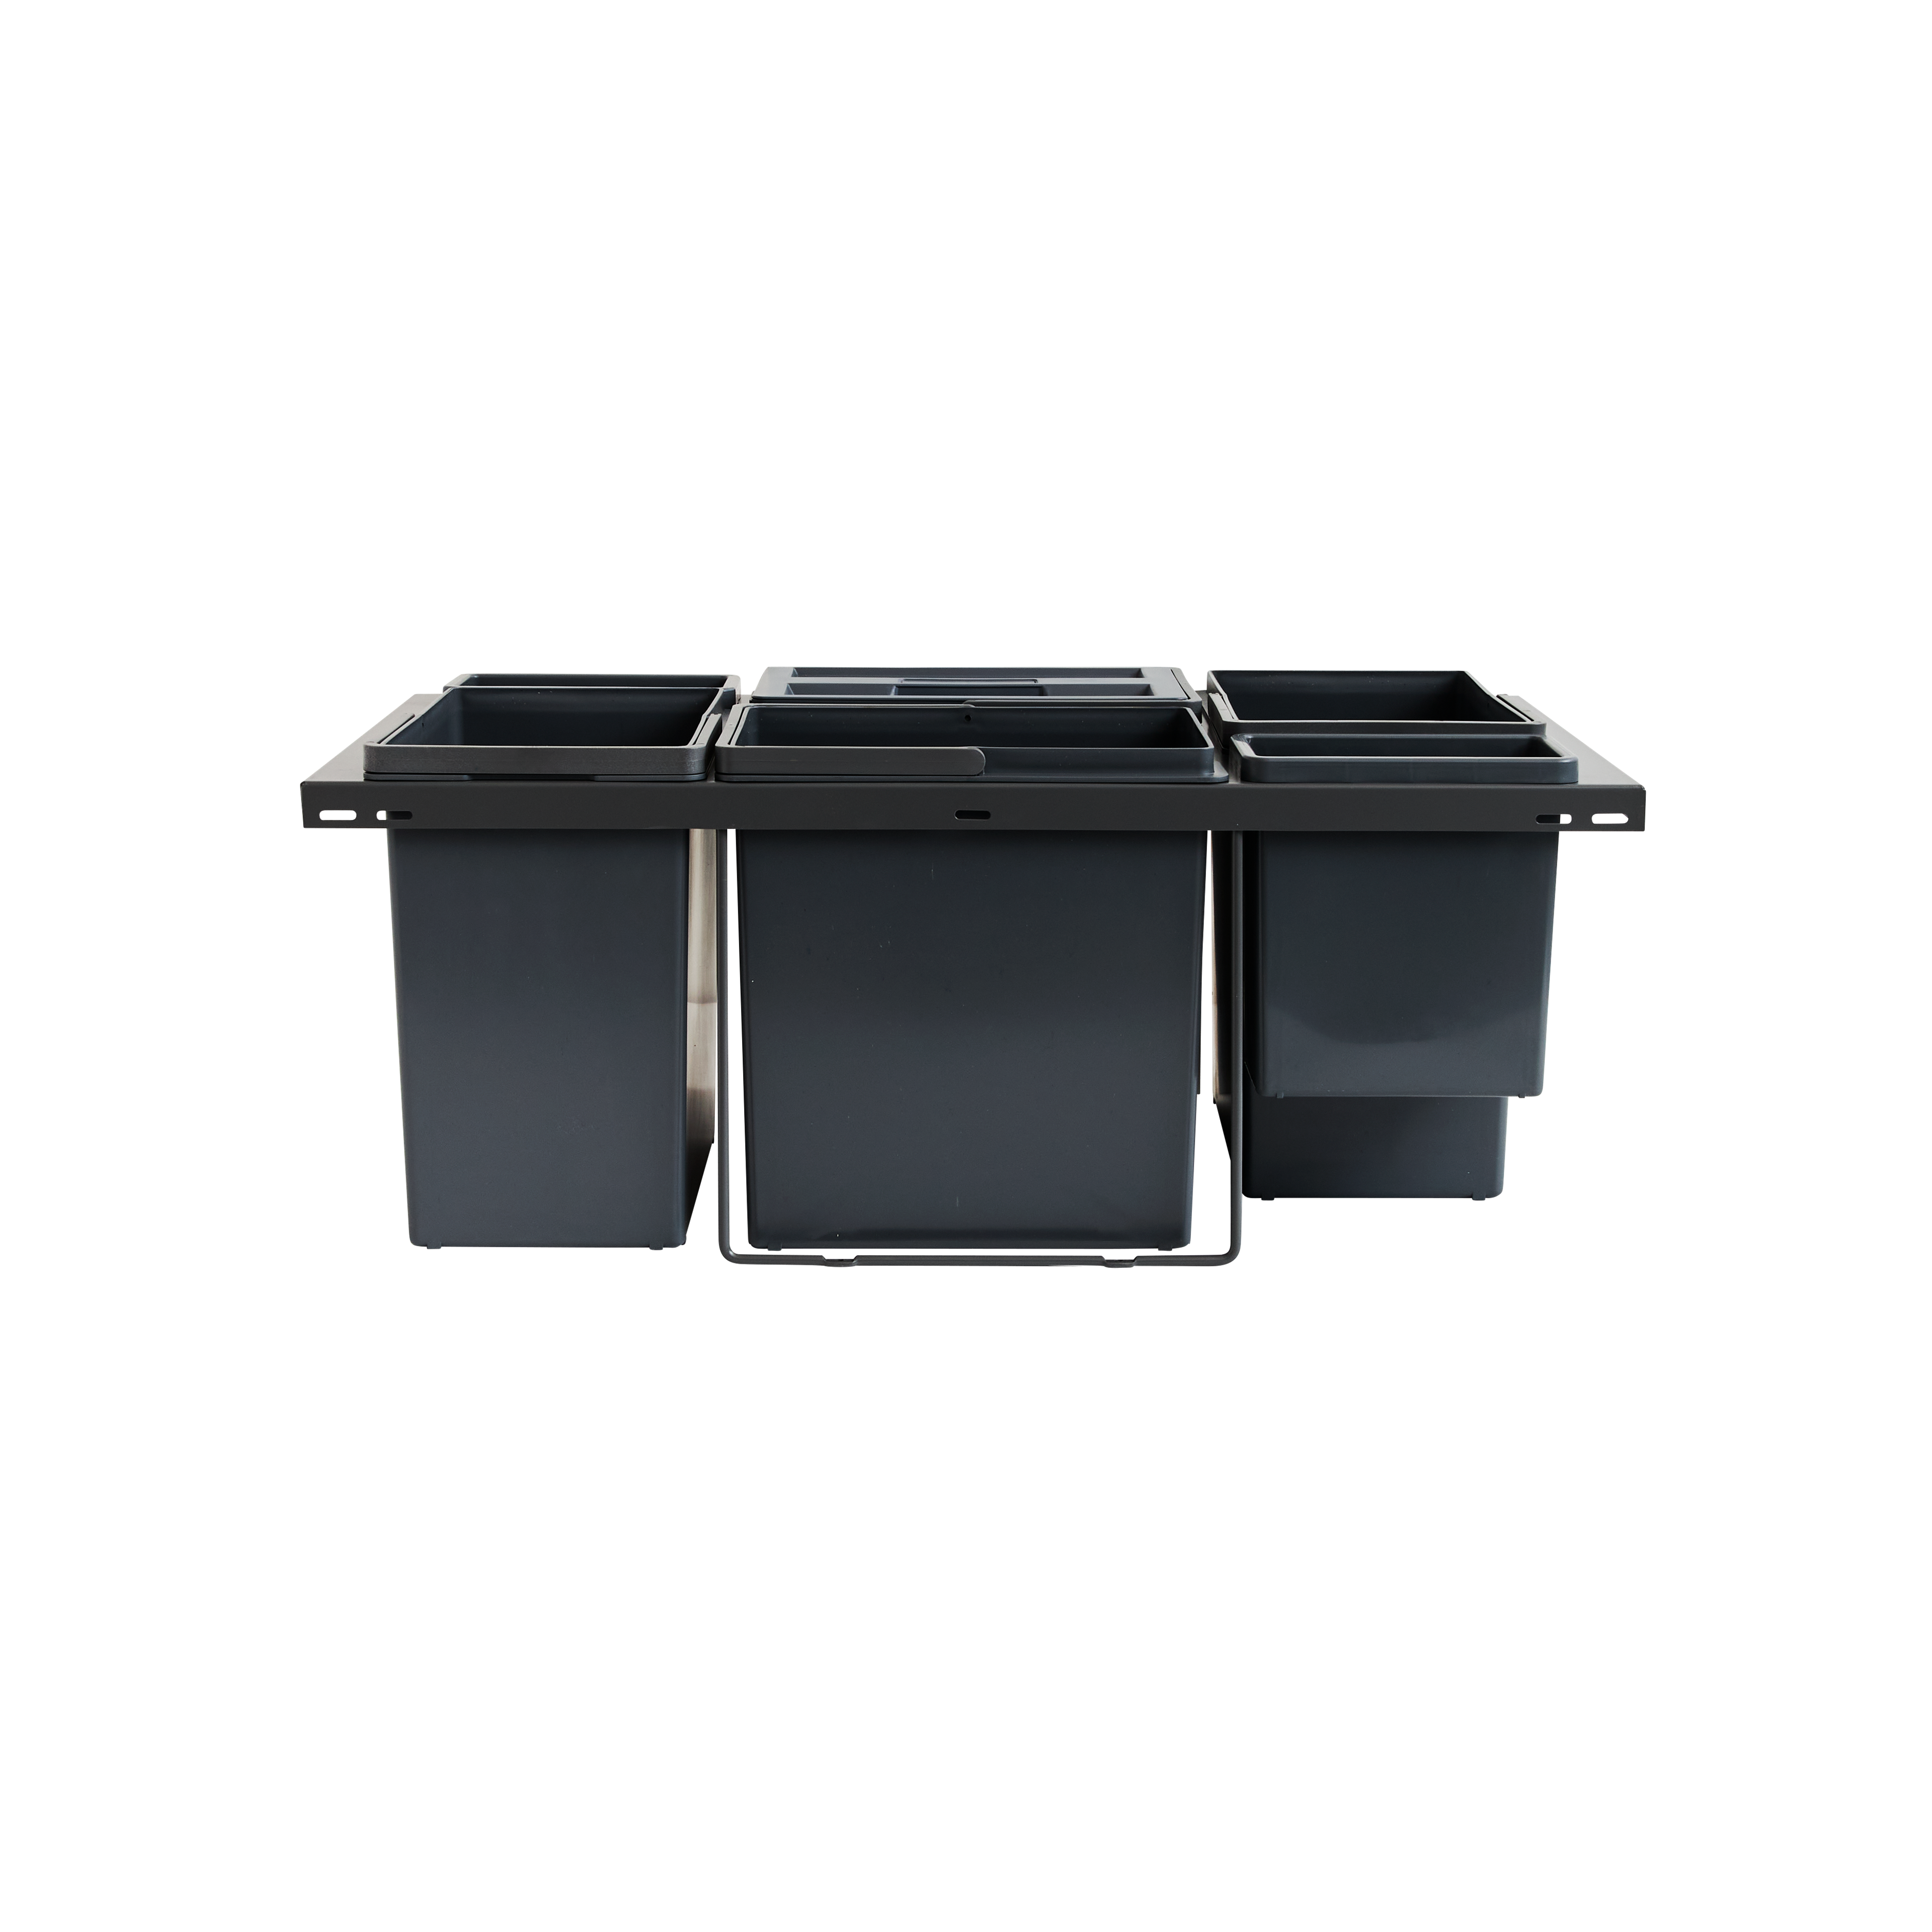 Sistema de clasificación de residuos Cube 80cm 